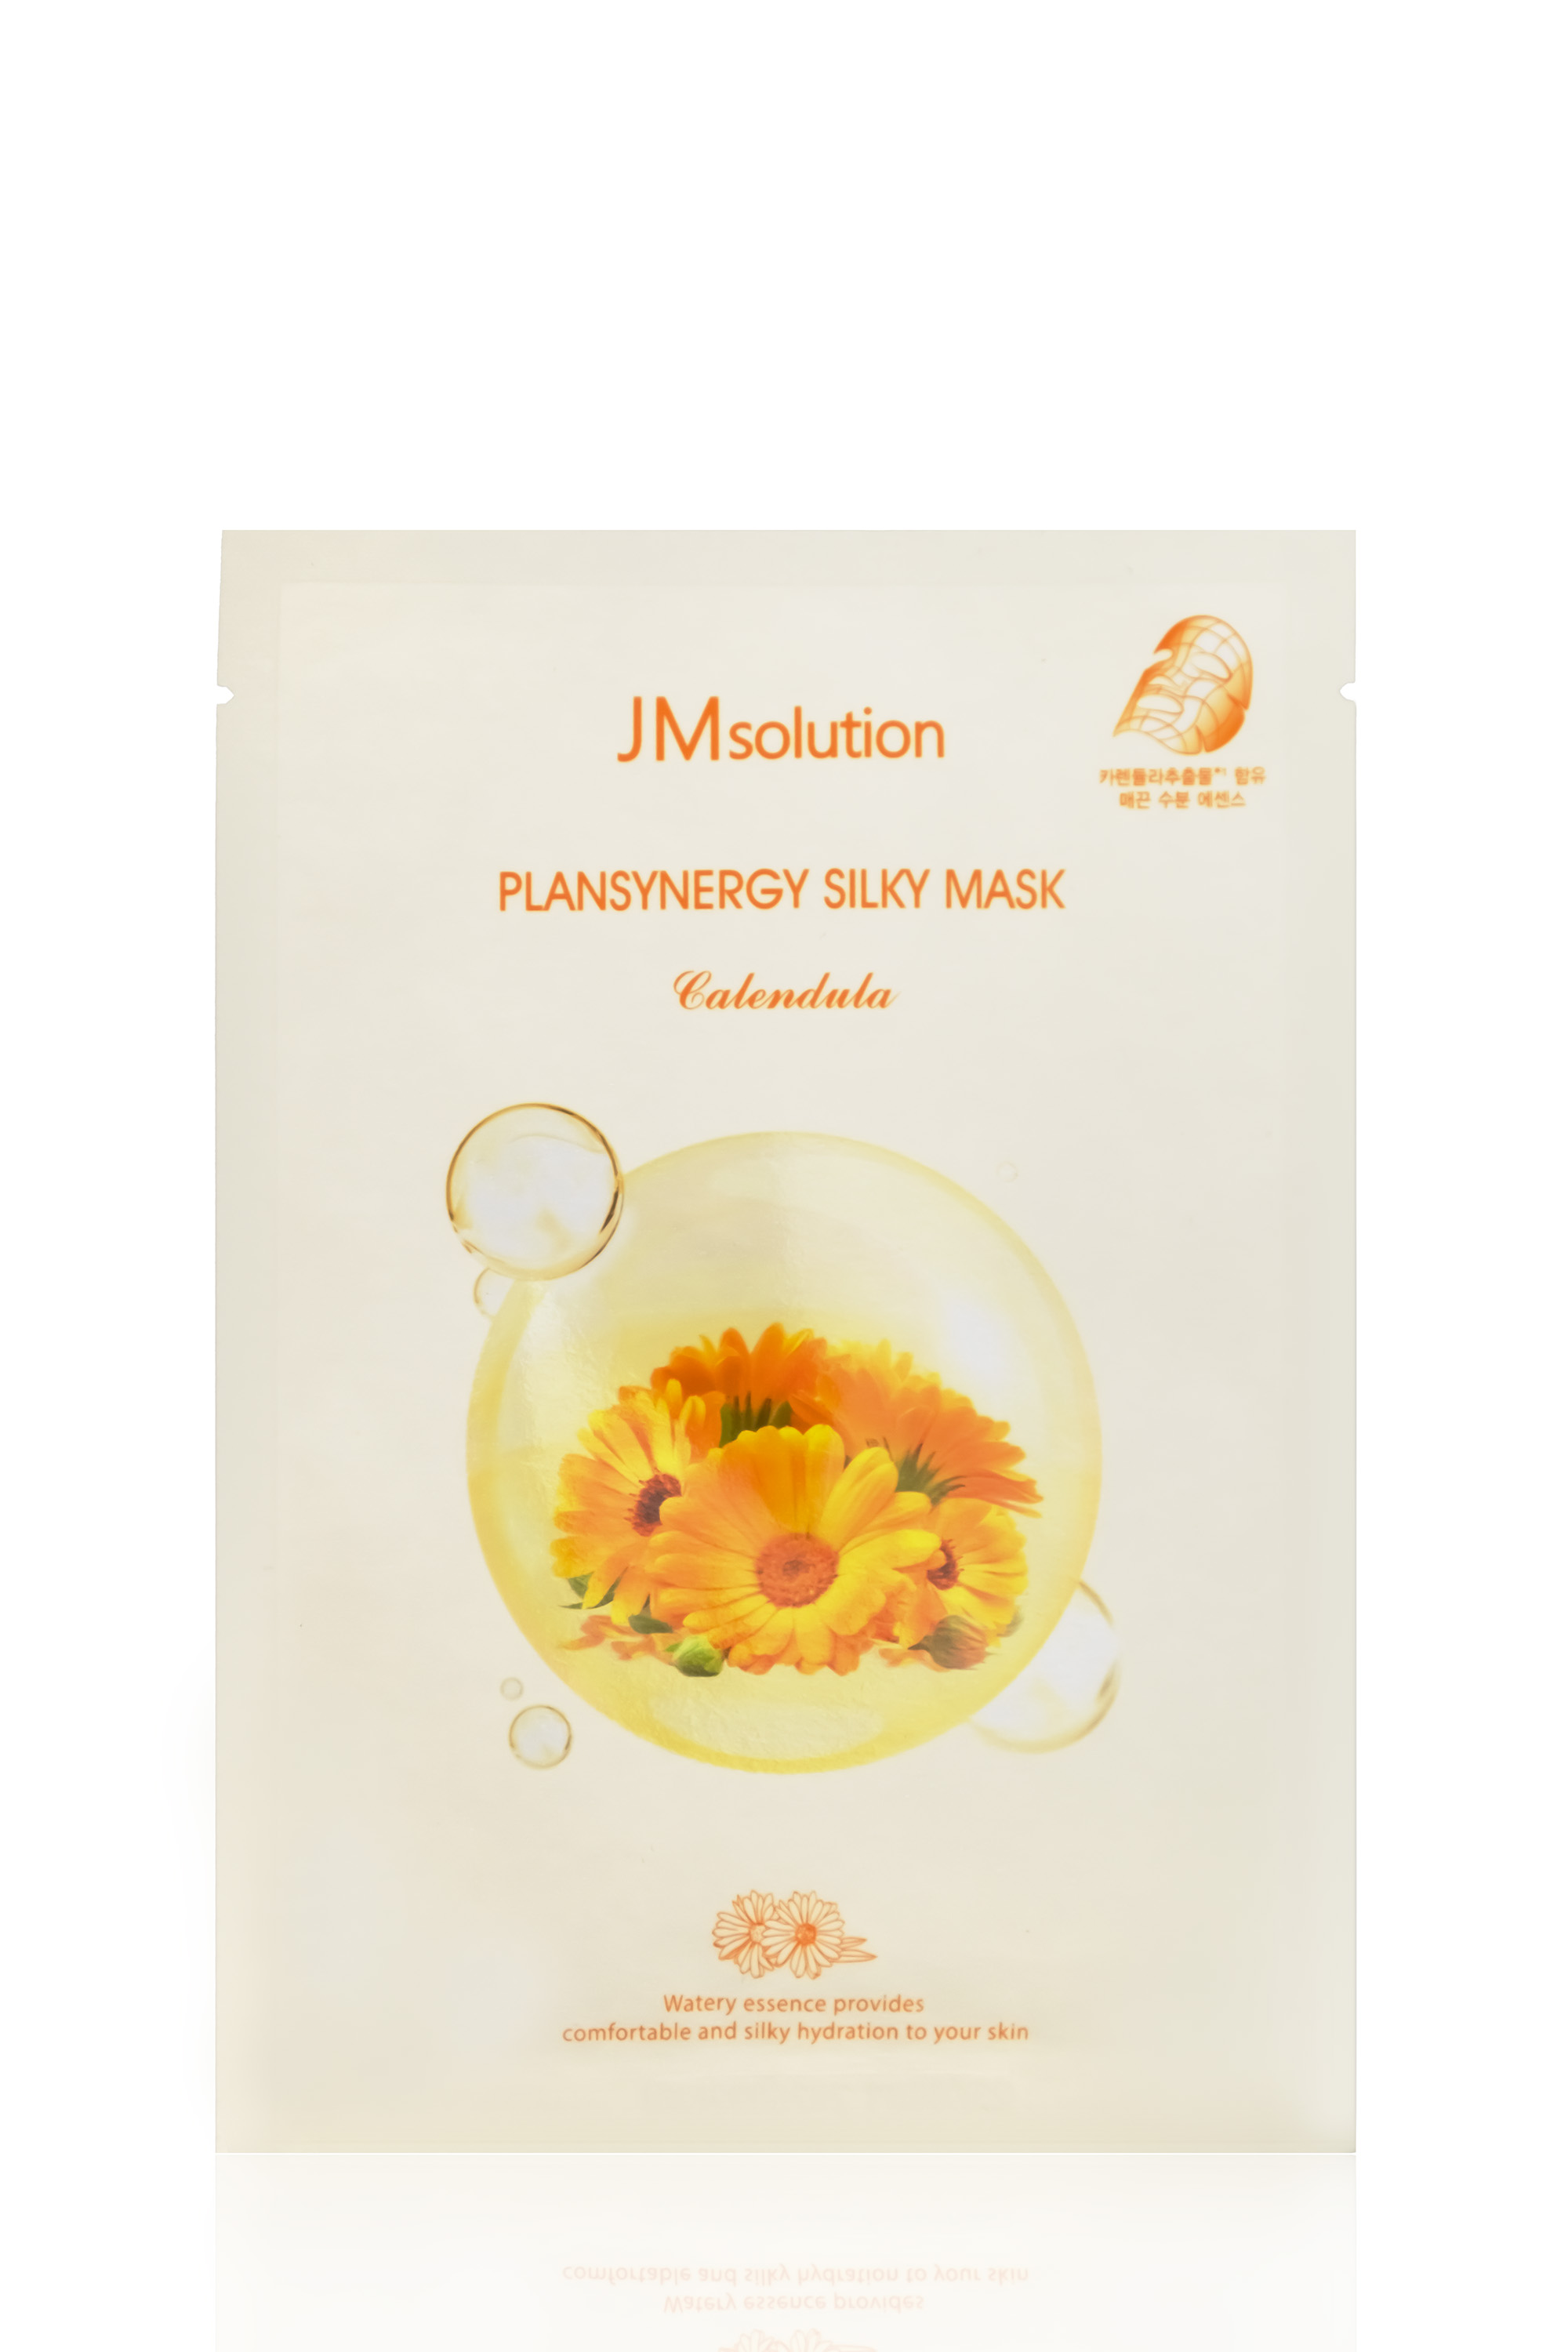  JMsolution Plansynergy Silky Mask ..